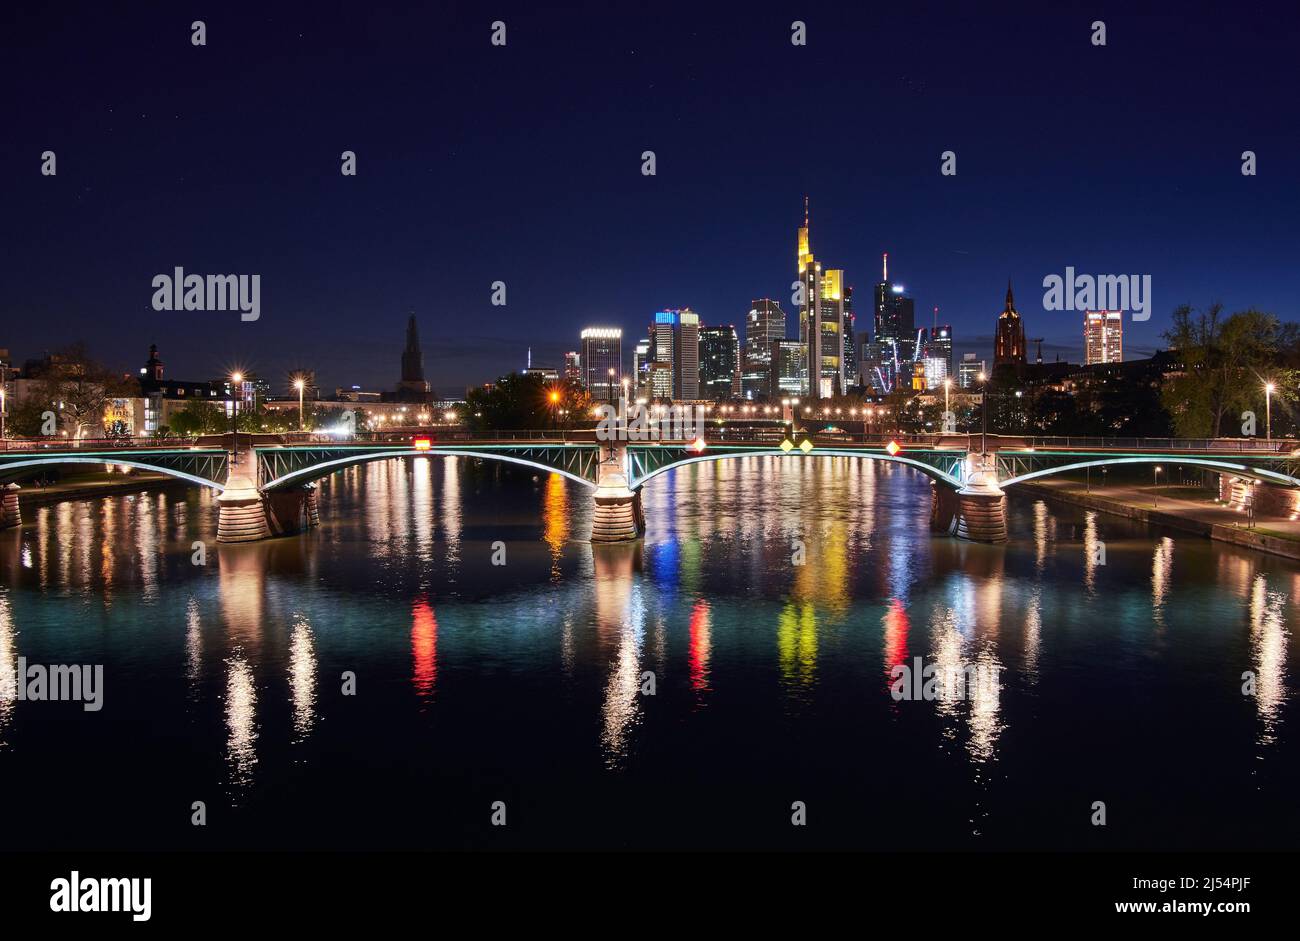 El horizonte de Frankfurt y el puente Ignatz Bubis iluminado se reflejan en el río Main por la noche Foto de stock